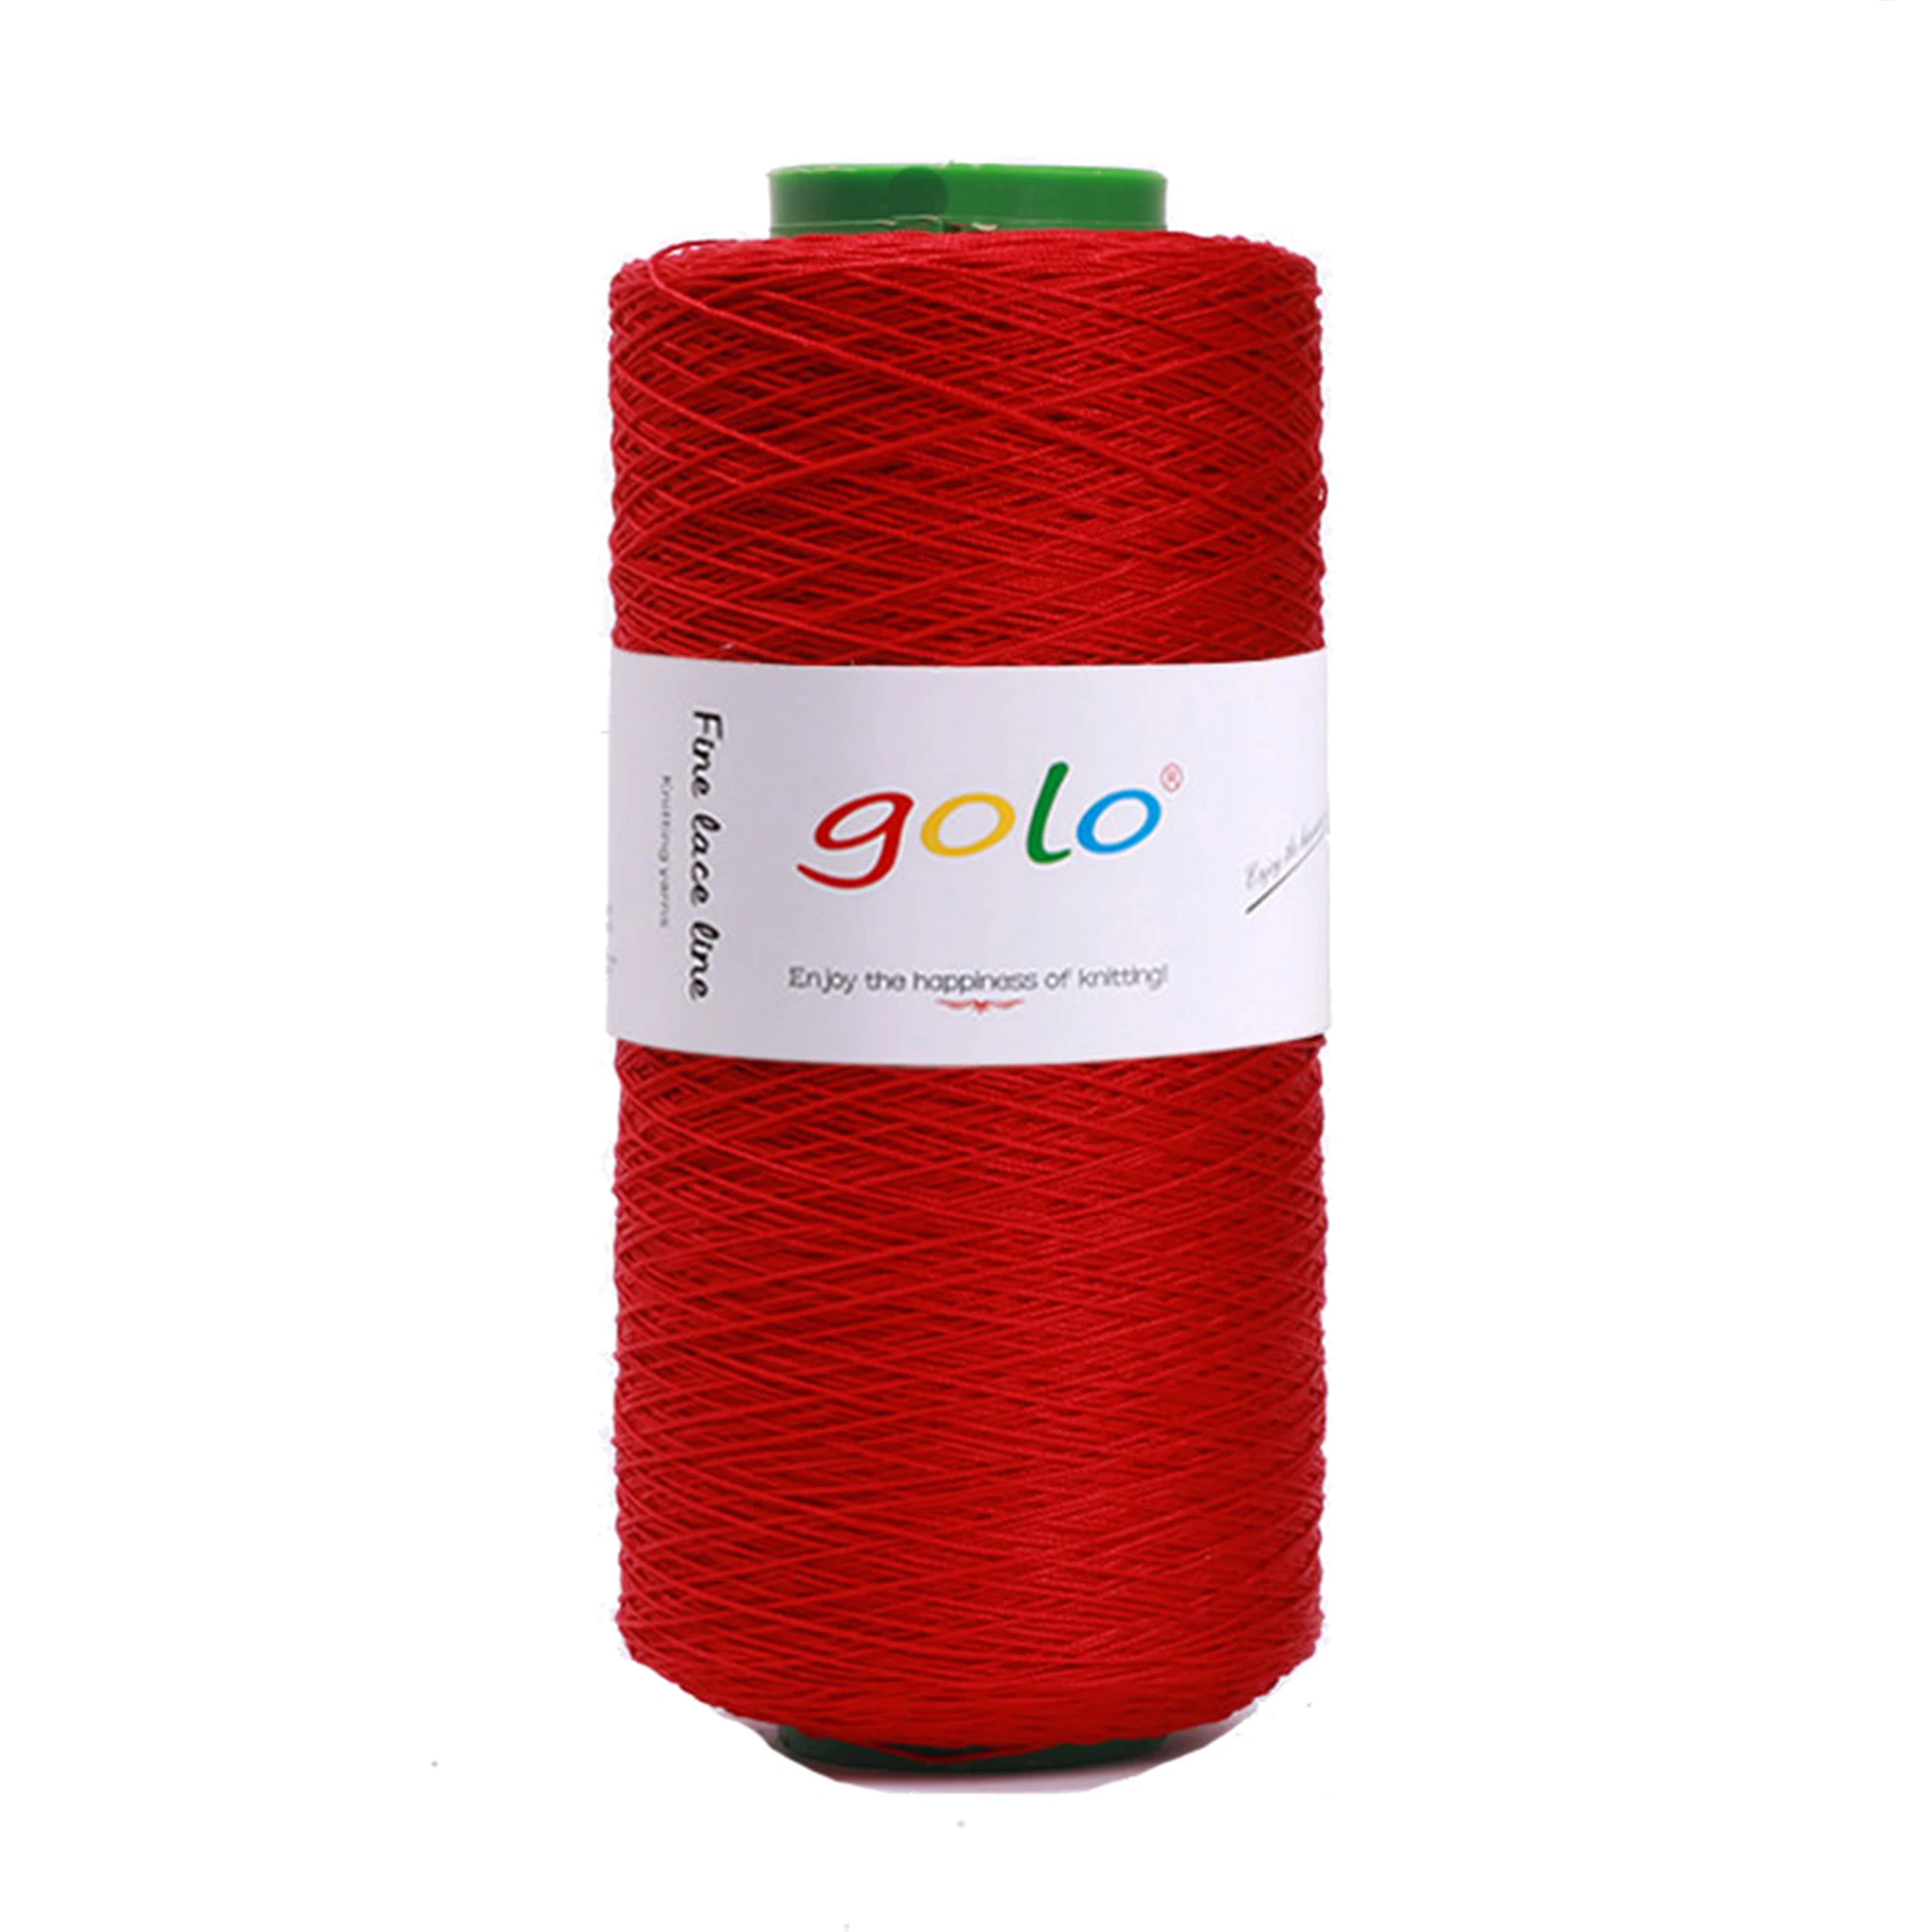 Golo Crochet Thread size 10,Cone crochet yarn,8.8oz 1558yd,250g